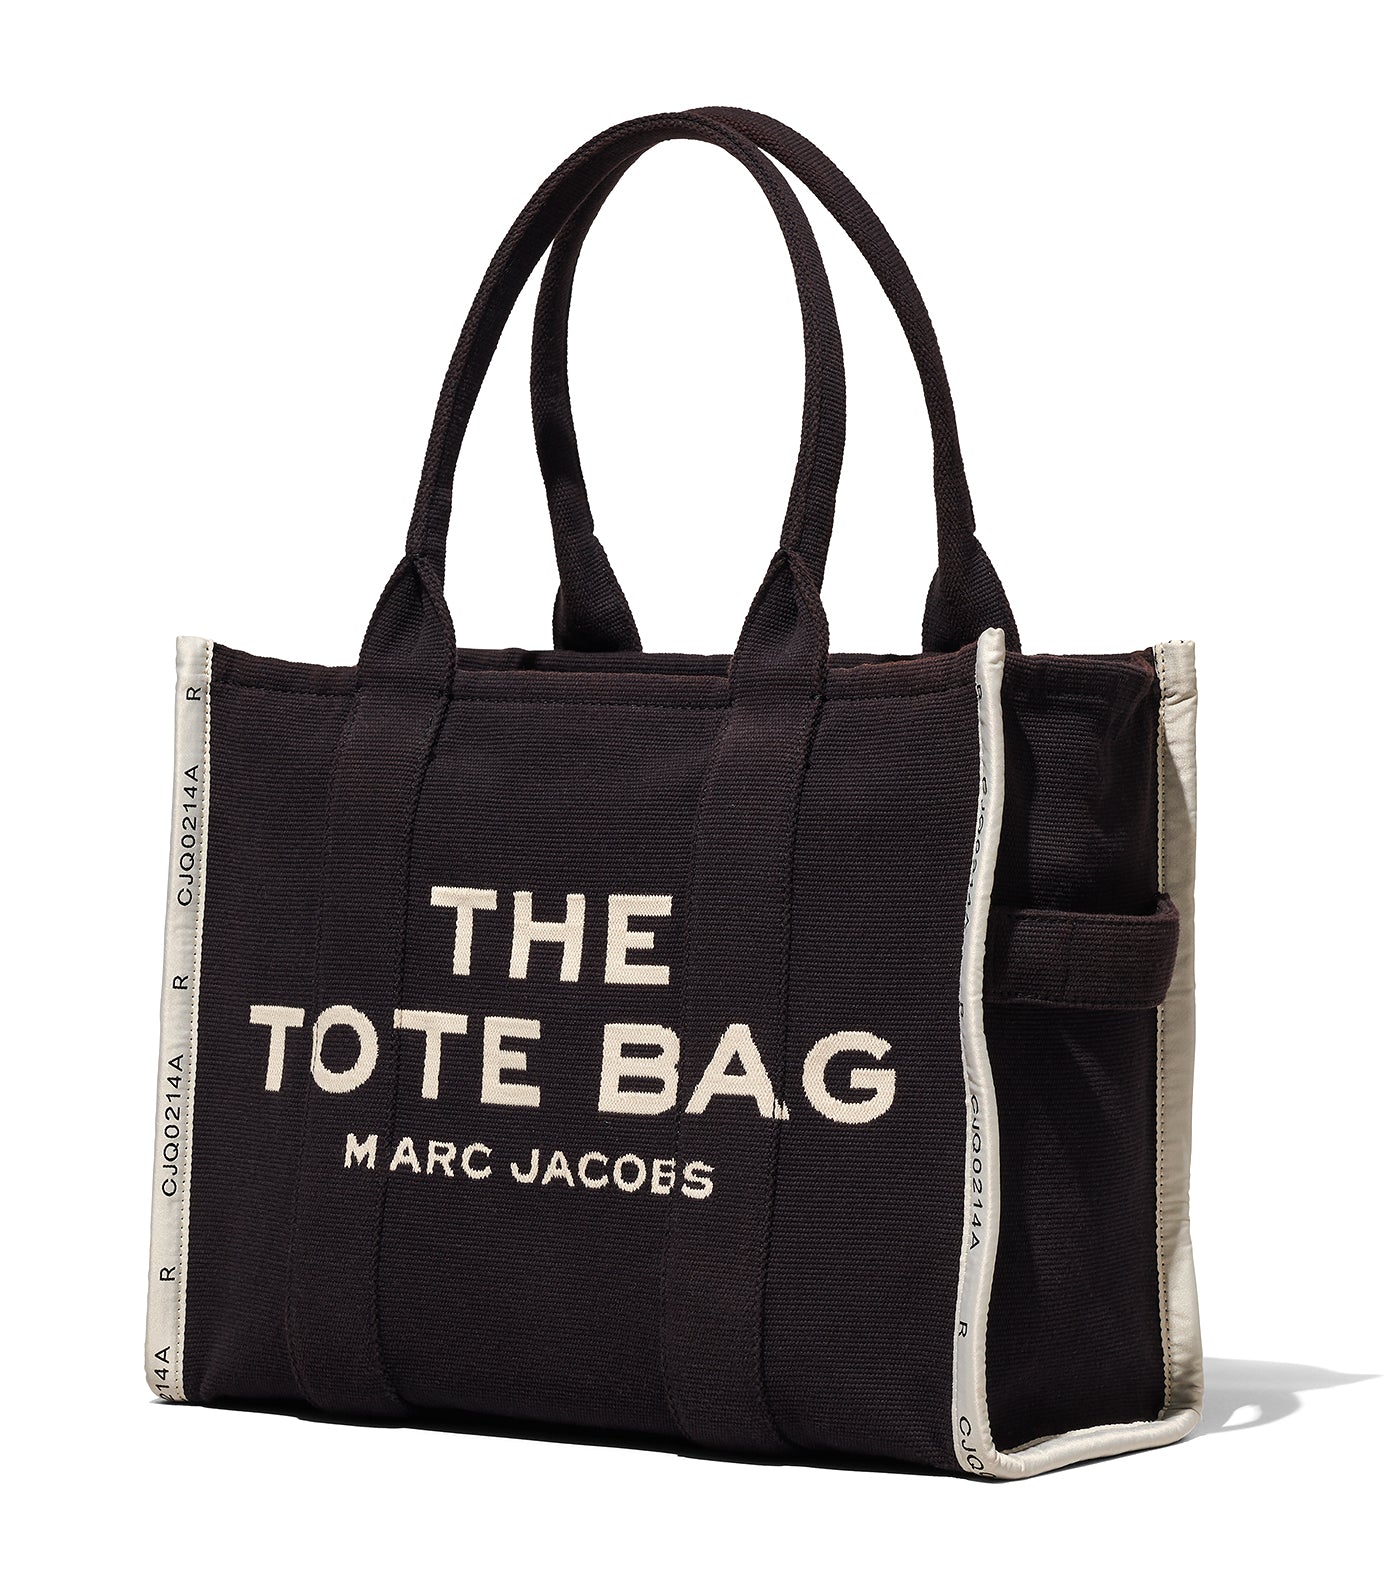 The Jacquard Large Tote Bag Black